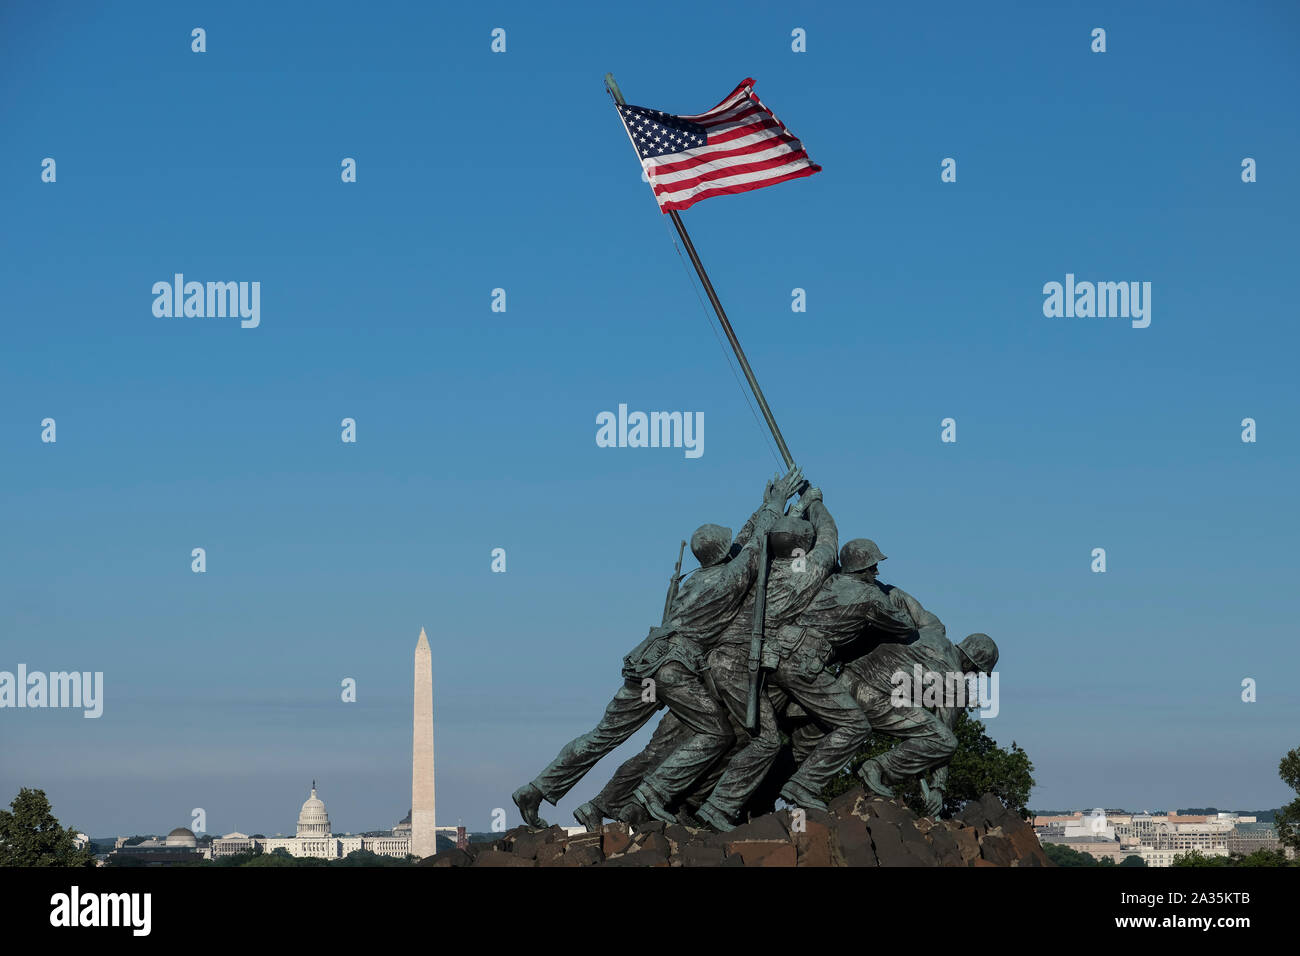 Estatua de Iwo Jima o US Marine Corps Memorial respaldado por el Capitolio de los EEUU el edificio y el Monumento a Washington, el Arlington Park Ridge, en Washington DC, EE.UU. Foto de stock